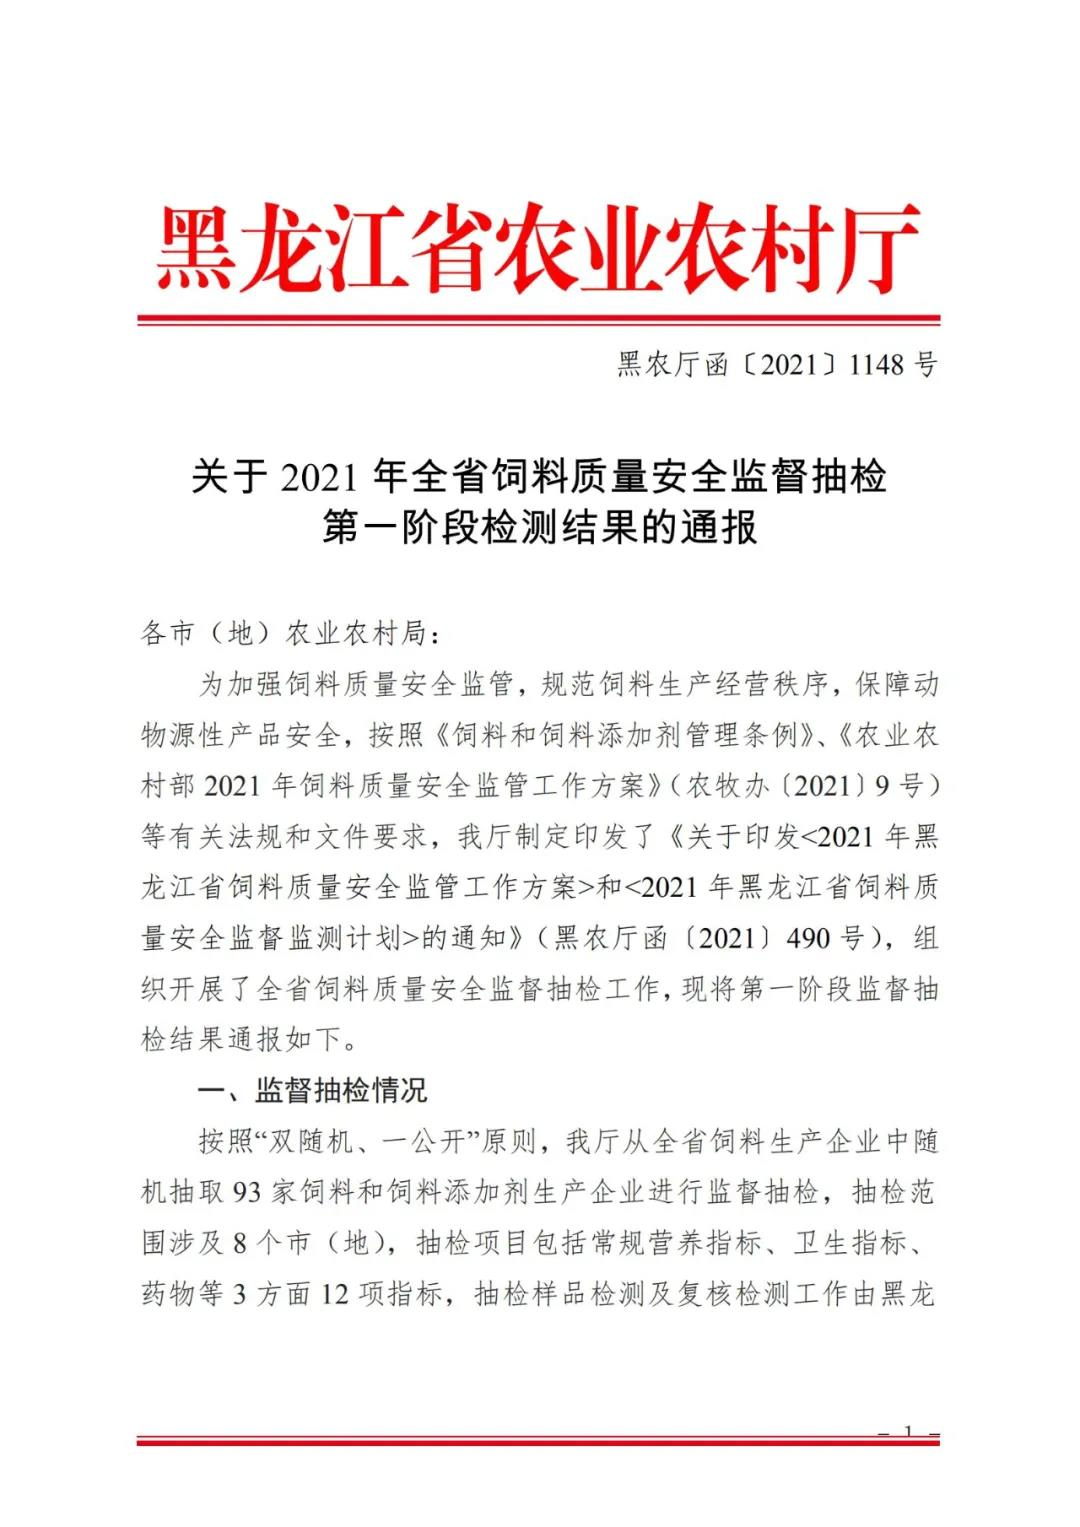 关于 2021 年黑龙江省饲料质量安全监督抽检 第一阶段检测结果的通报